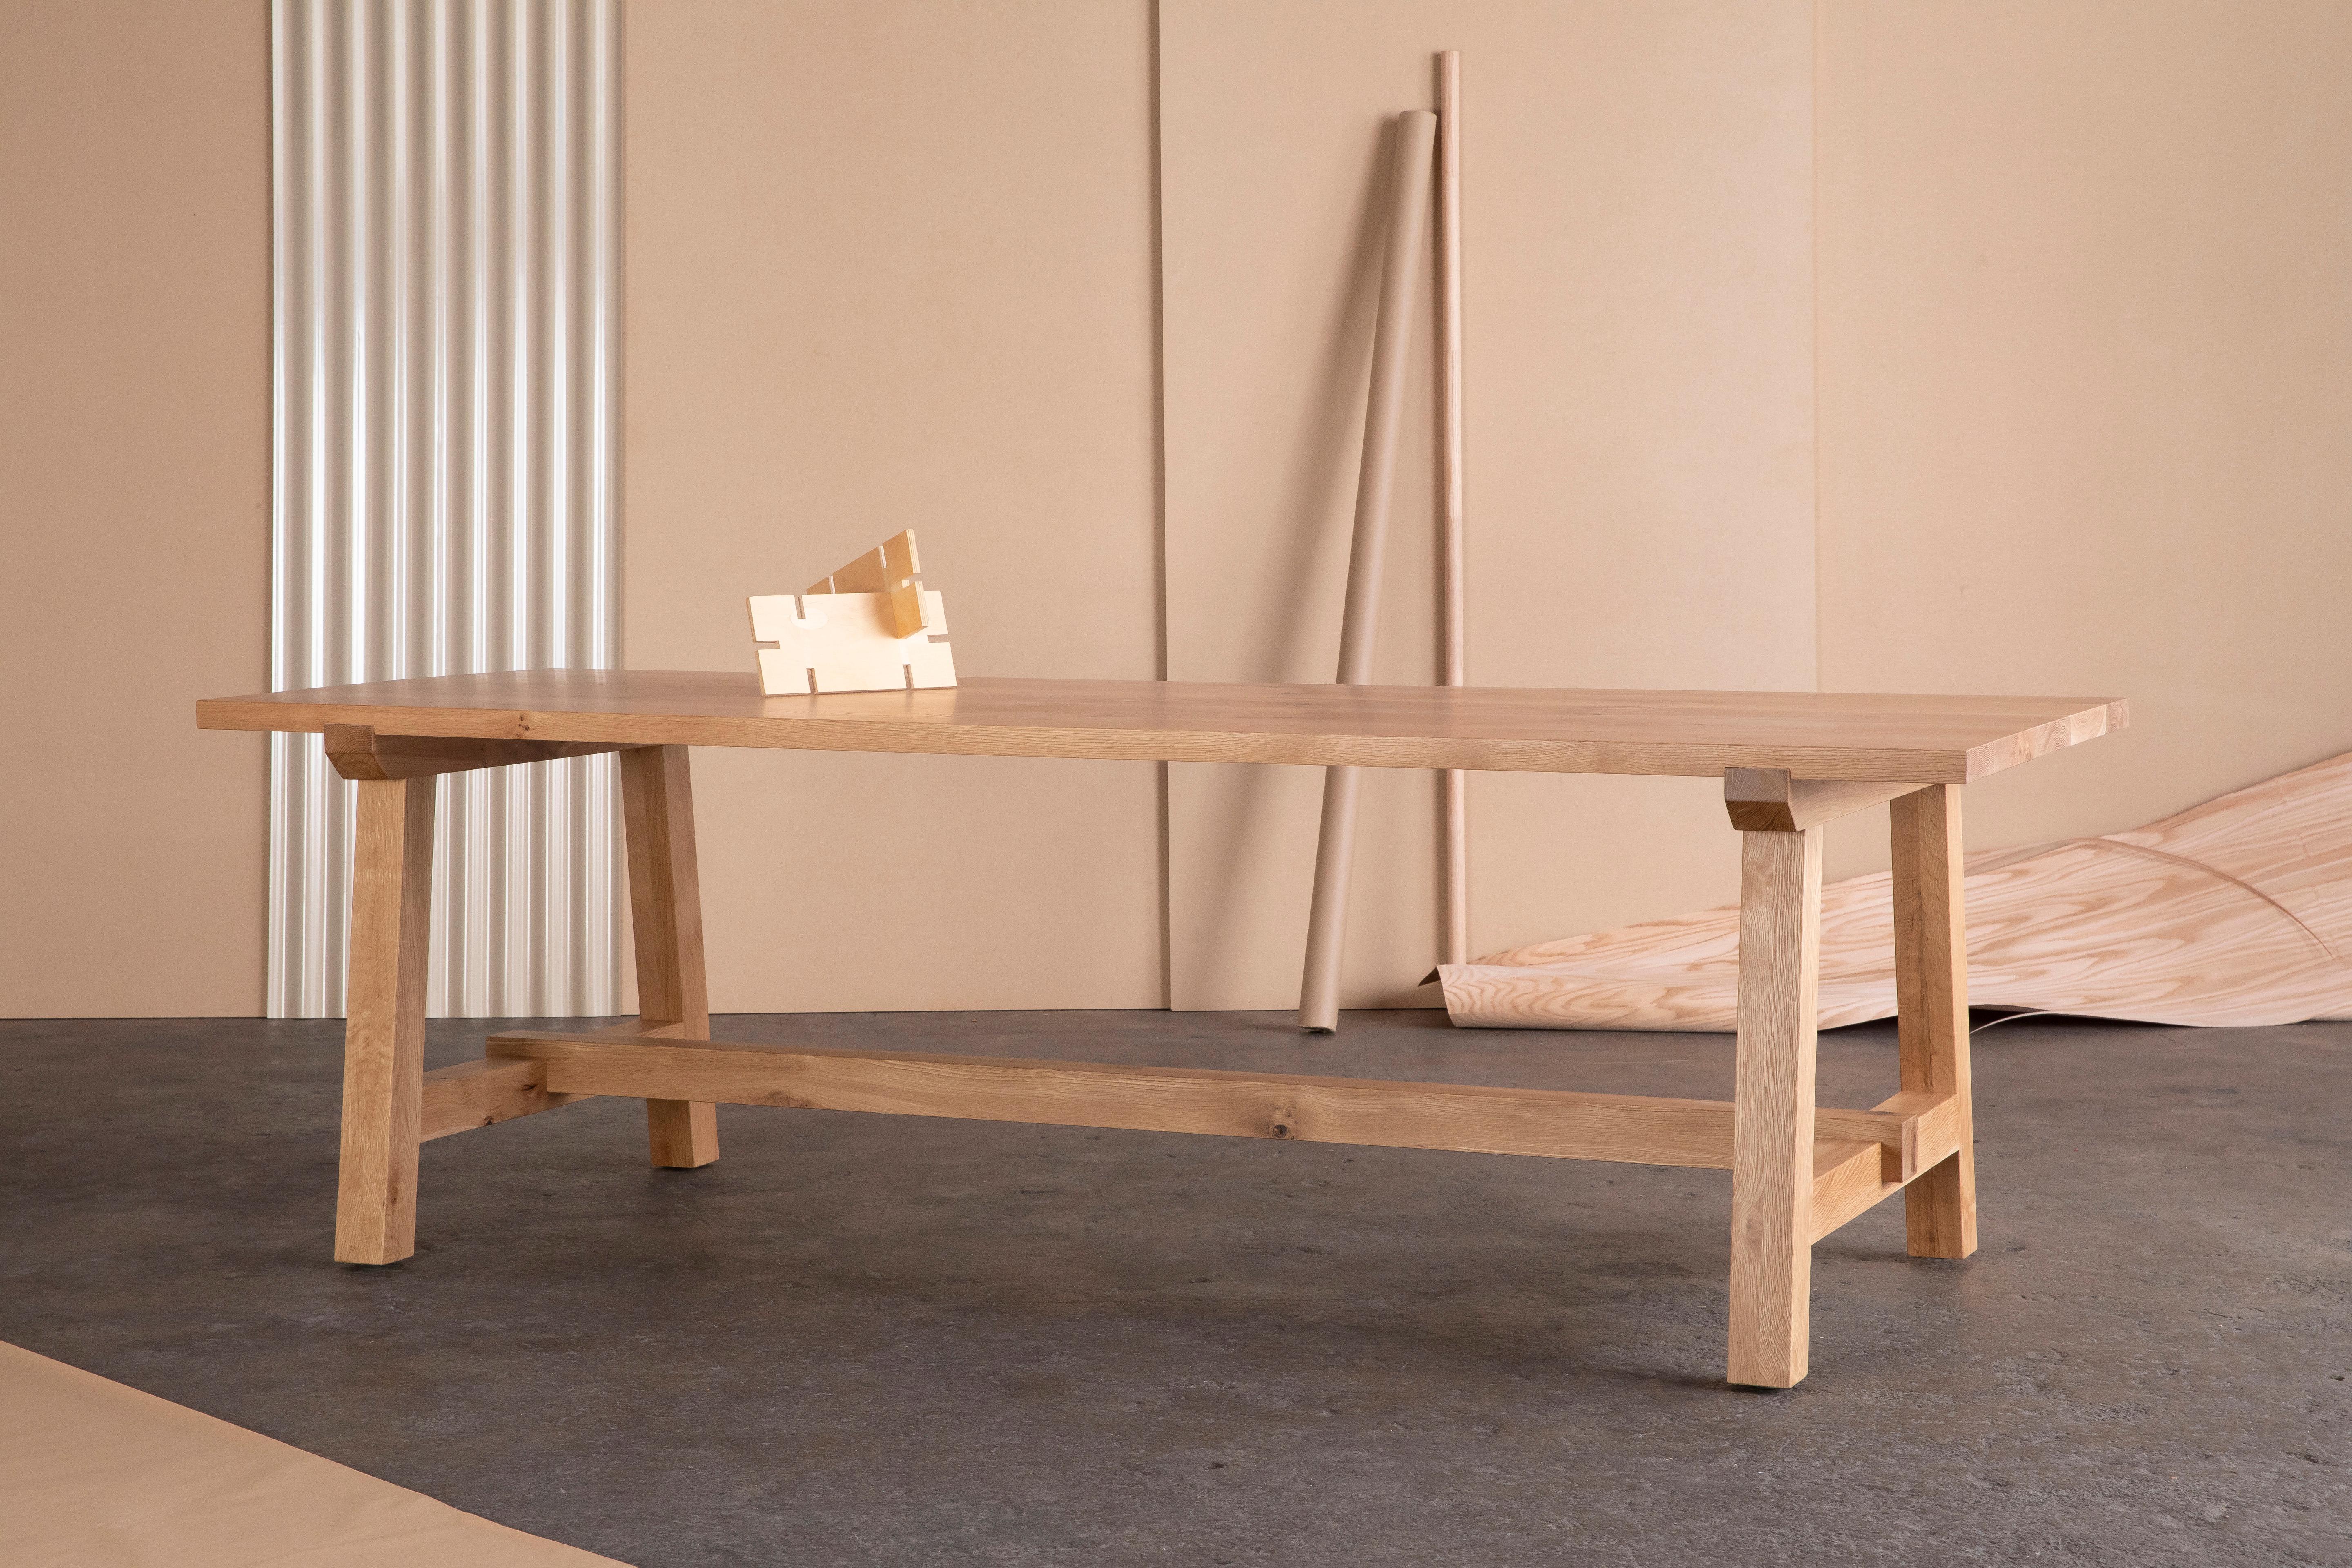 Der Winston-Esstisch aus Eichenholz hat einen zeitlosen Look und fügt sich problemlos in traditionelle, rustikale und moderne Umgebungen ein.

Das Gestell wird von einer stabilen Massivholzstrebe getragen und definiert den Stil und die Funktion